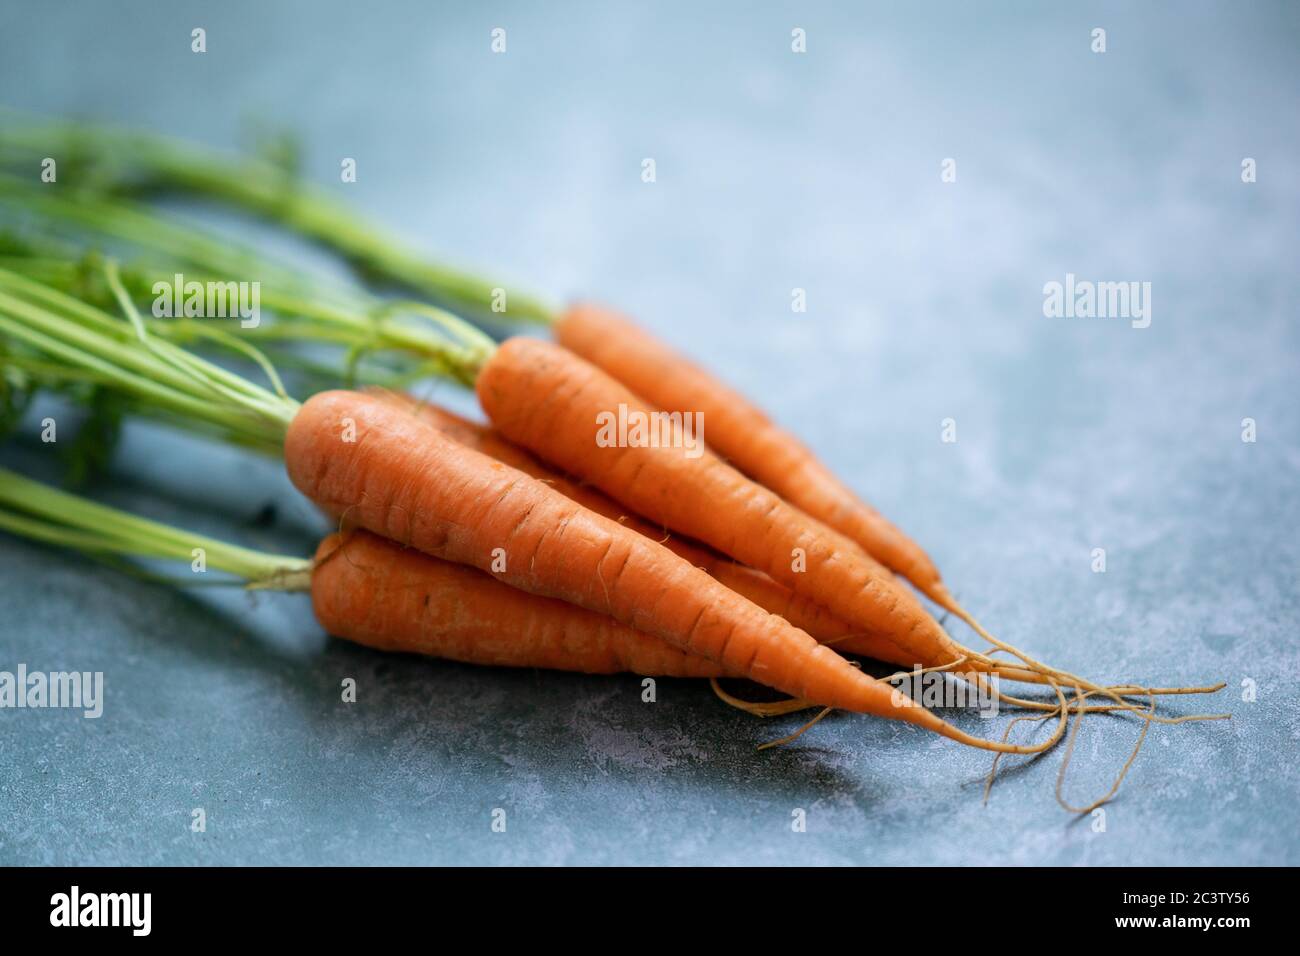 Un mazzetto di carote Foto Stock